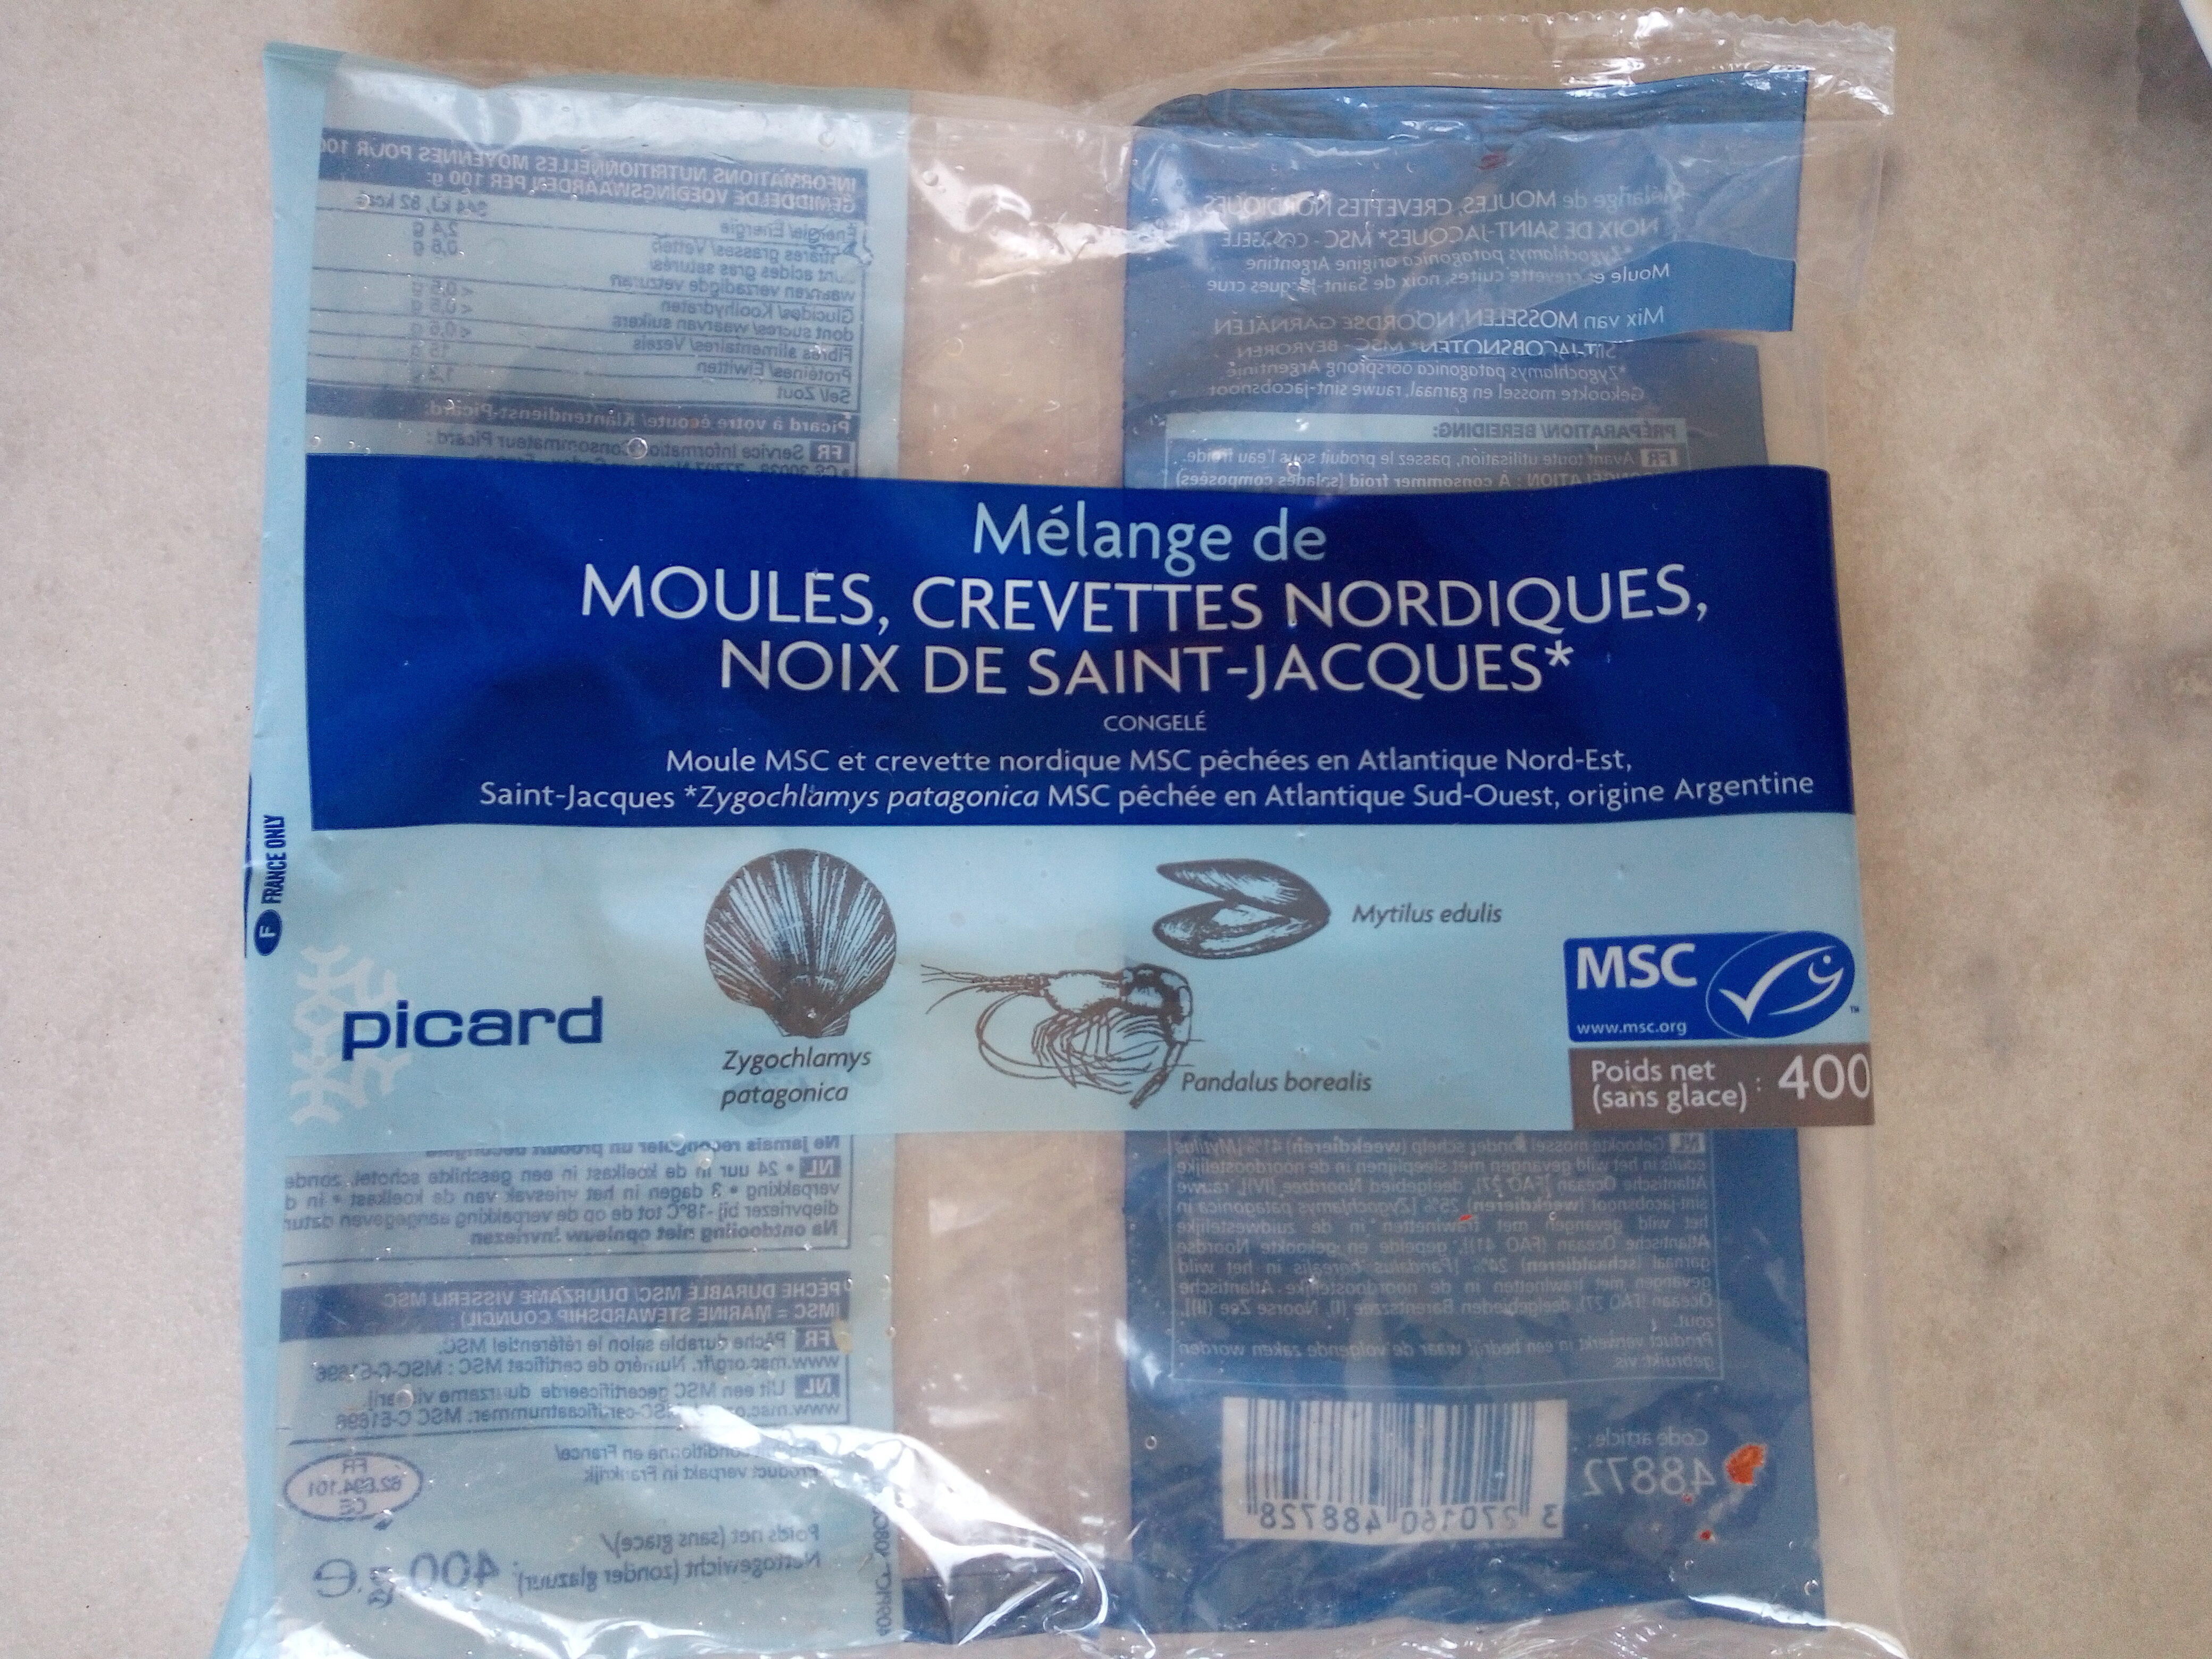 Mélange de moules, crevettes nordiques, noix de saint-jacques - Produkt - fr